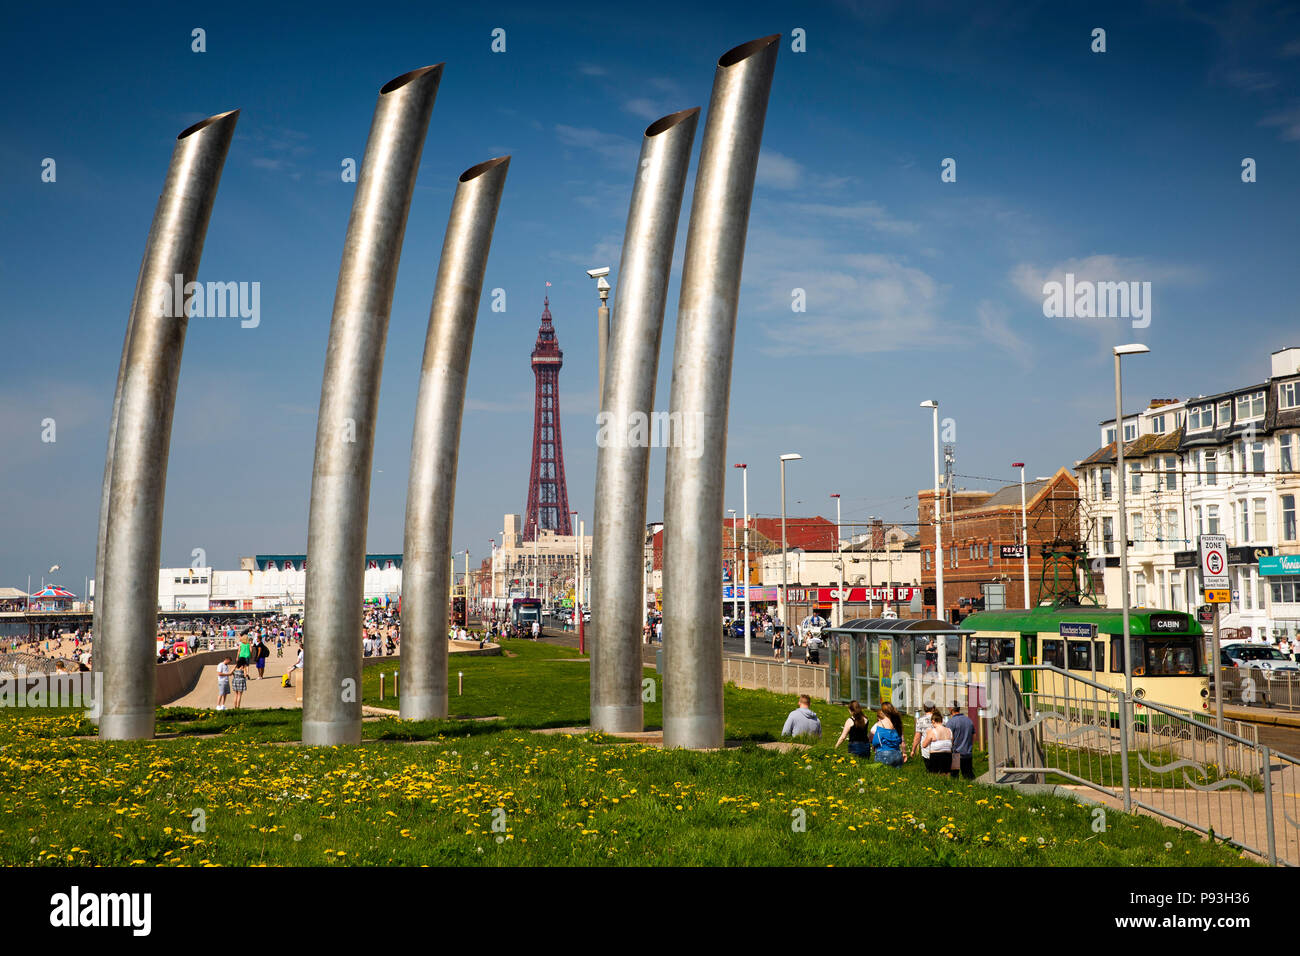 Royaume-uni, Angleterre, dans le Lancashire, Blackpool, Promenade, Manchester Square station de pompage évents sculpture moderne Banque D'Images